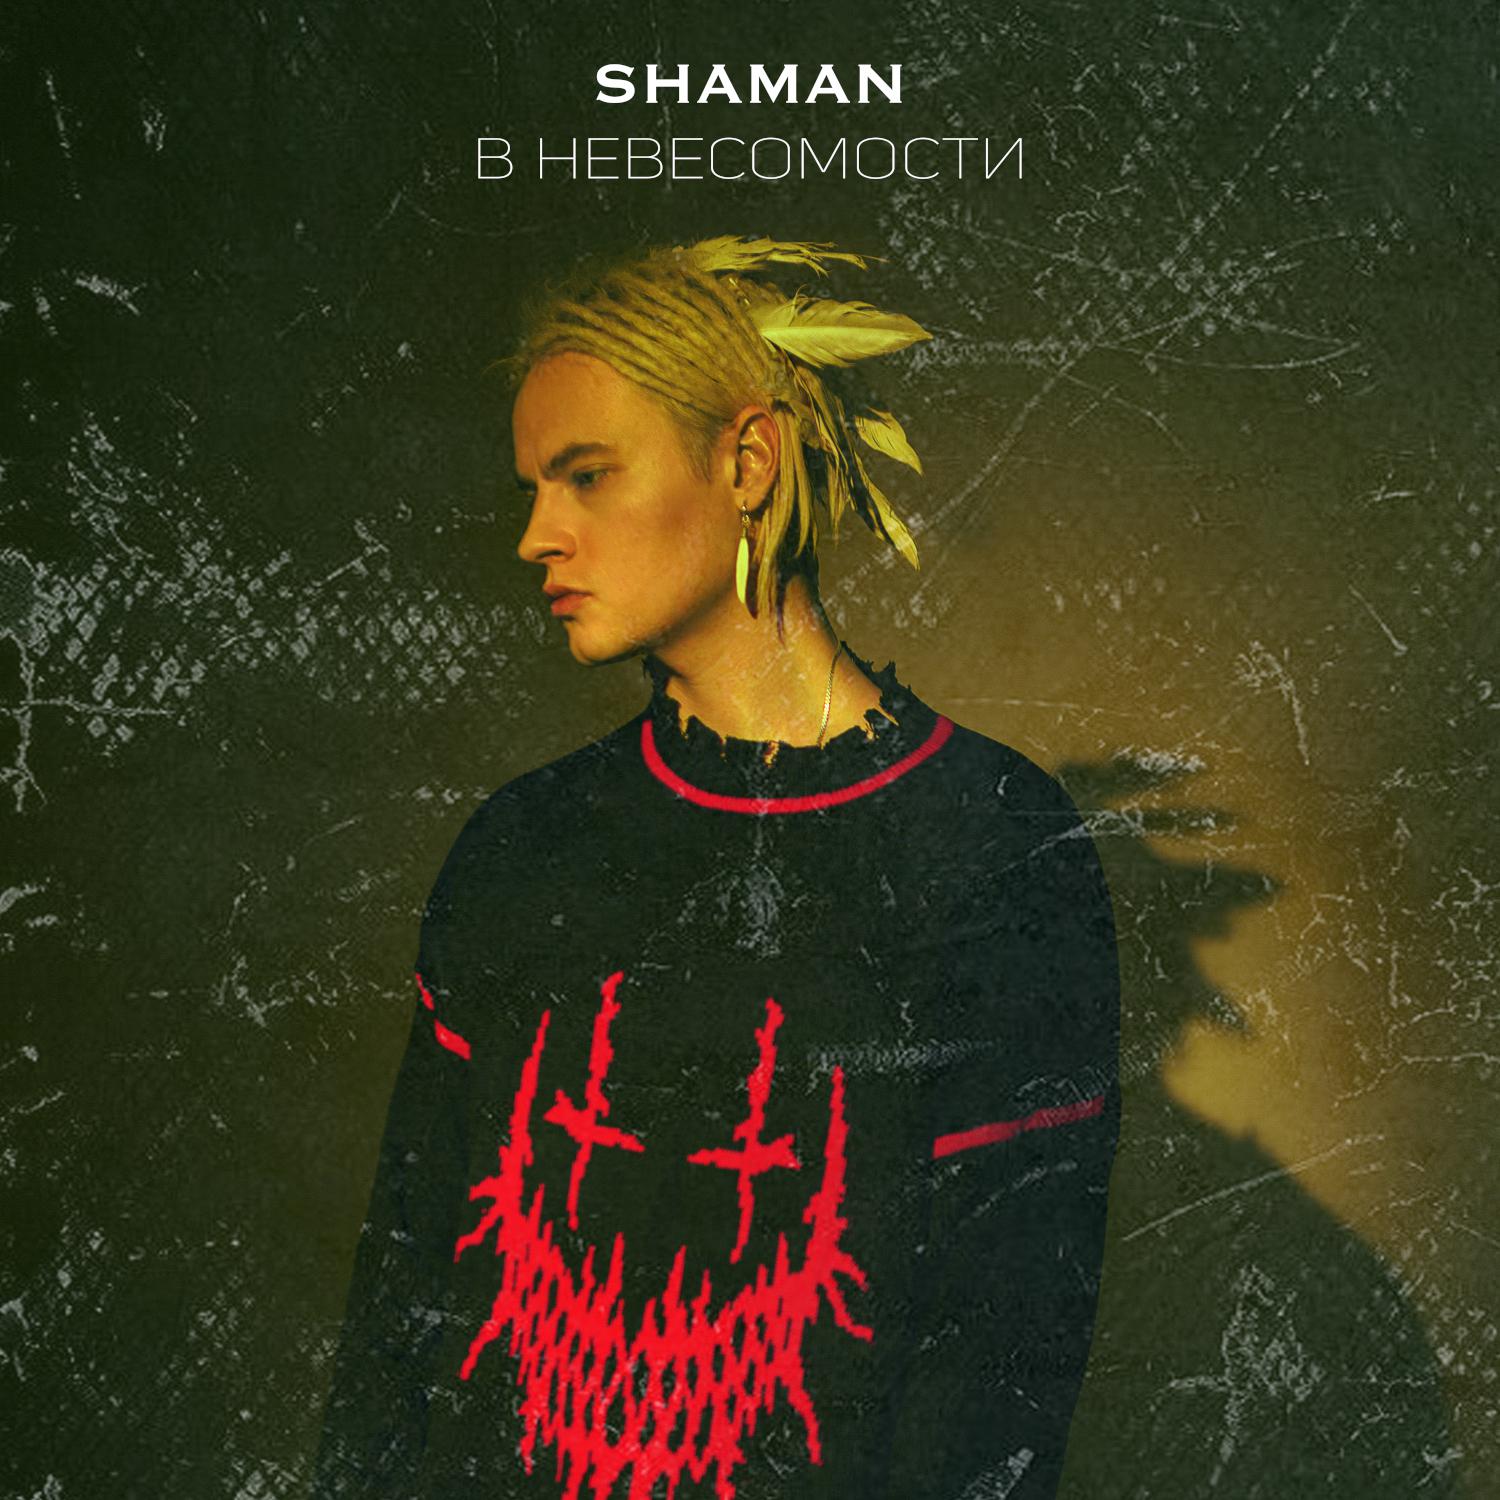 Песни шаман любимая женщина. Shaman (певец). Шаман певец обложка. В невесомости Shaman. В невесомости Shaman обложка.